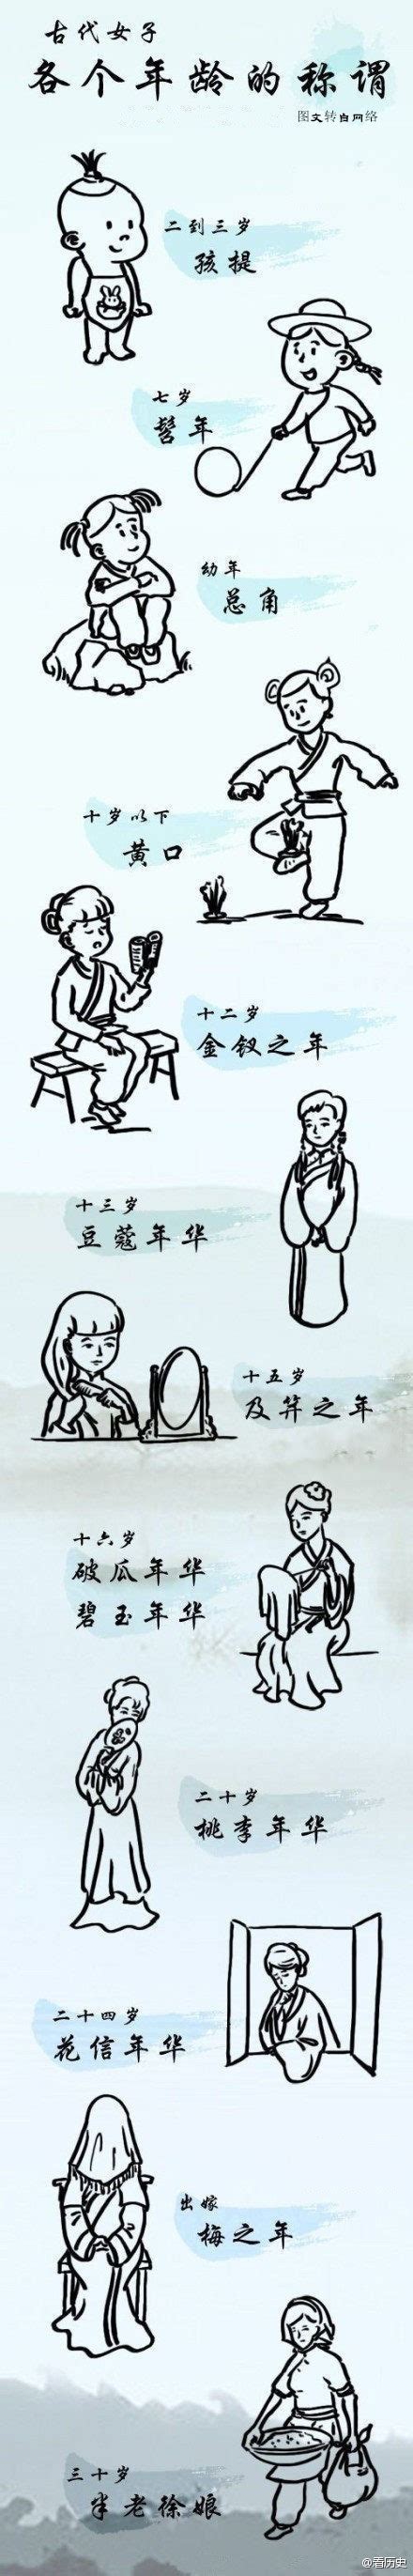 超实用的中国亲戚称谓导图，收藏给孩子免得喊错！_称呼